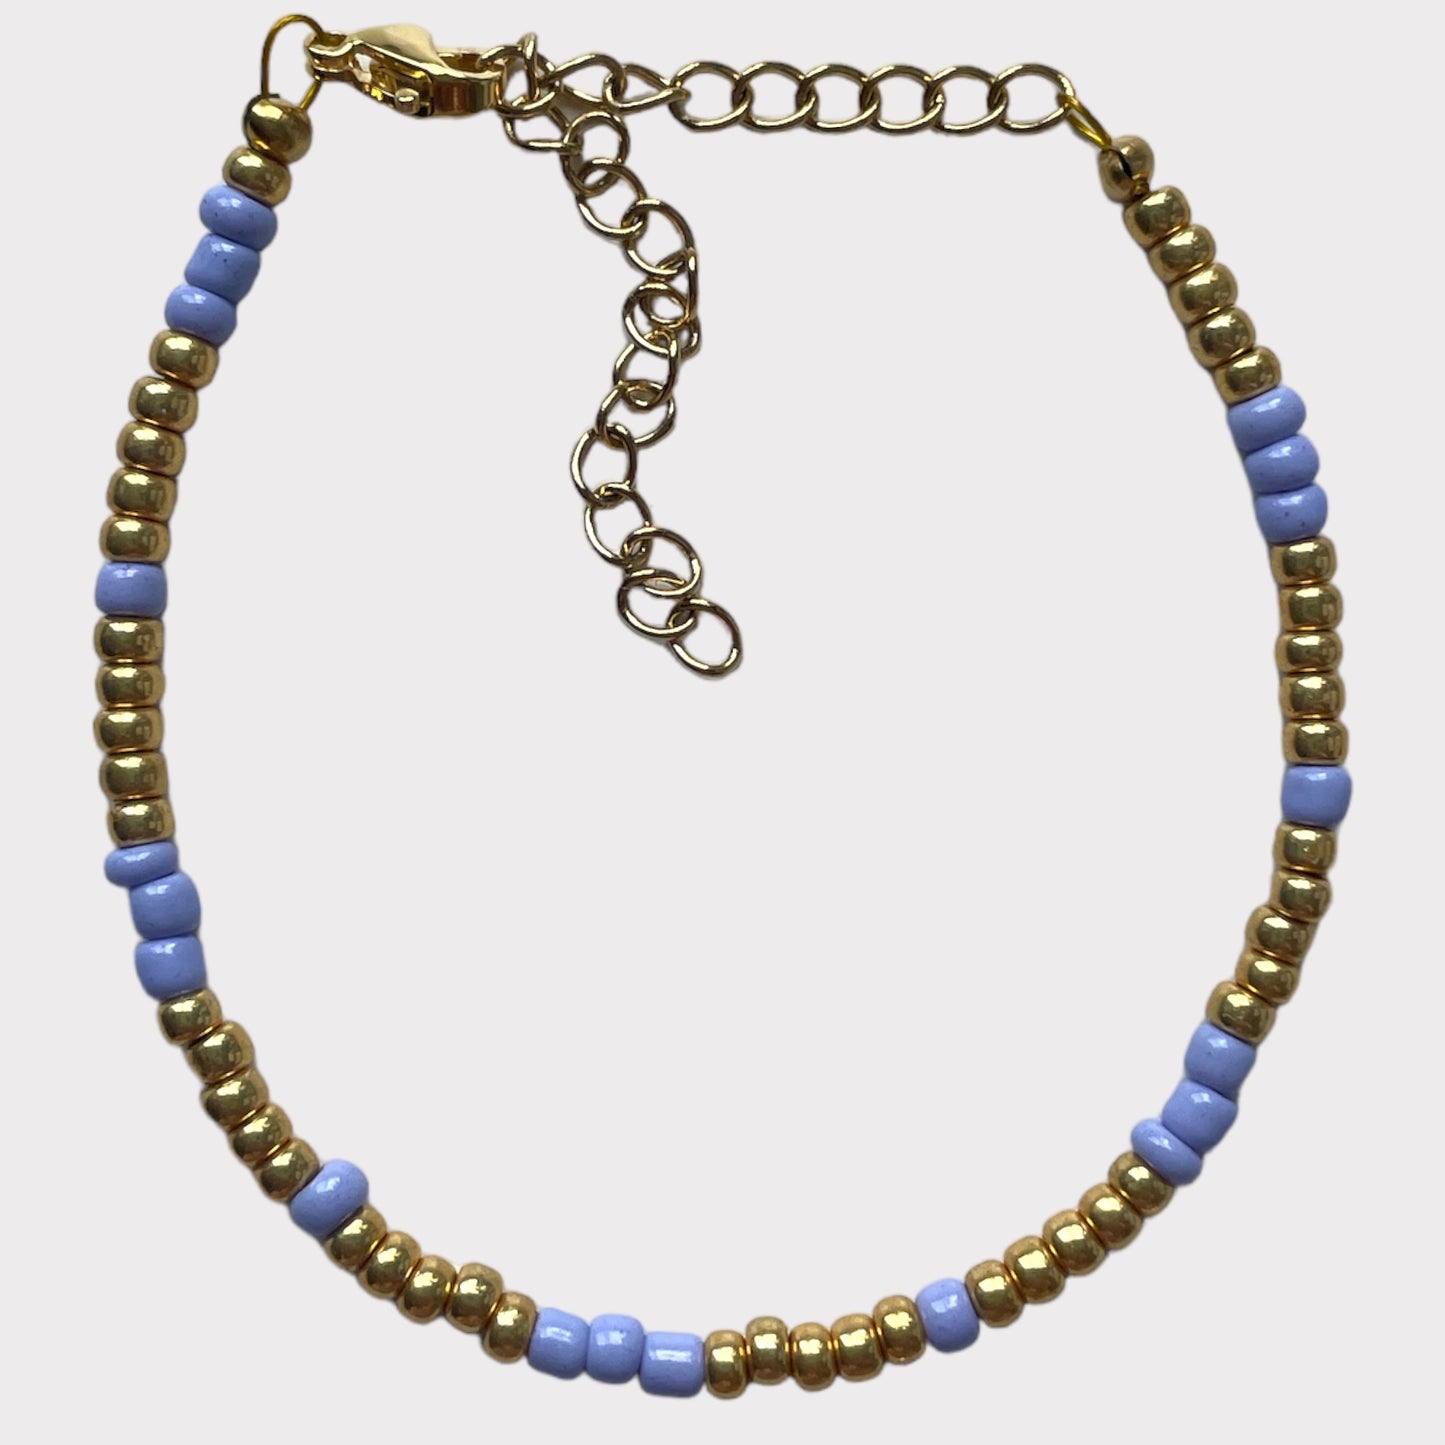 ‘CLASSIC BLUE’ bracelet